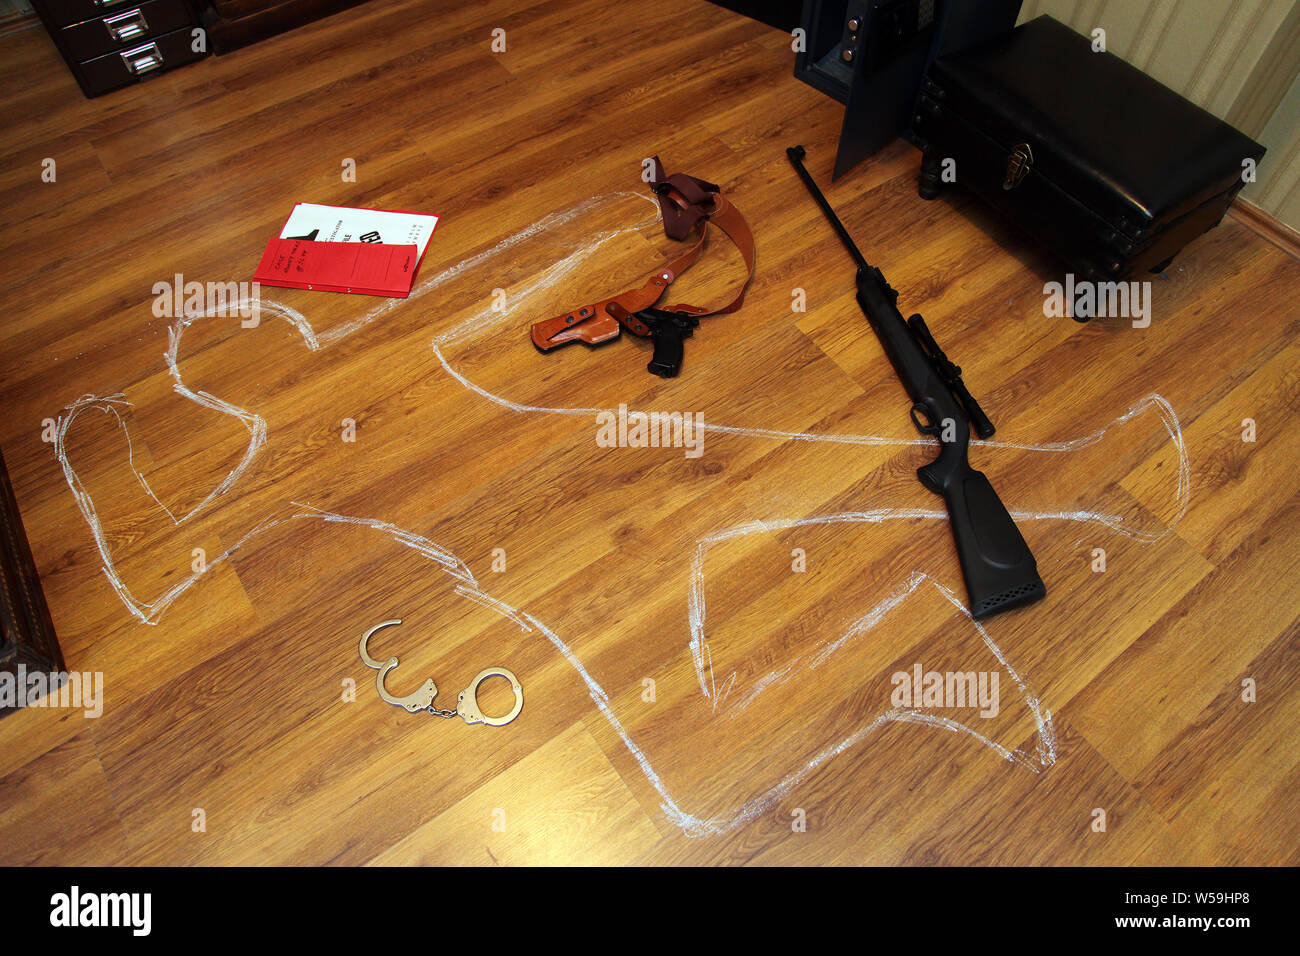 Gun, handcuffs and secret files in the crime scene Stock Photo